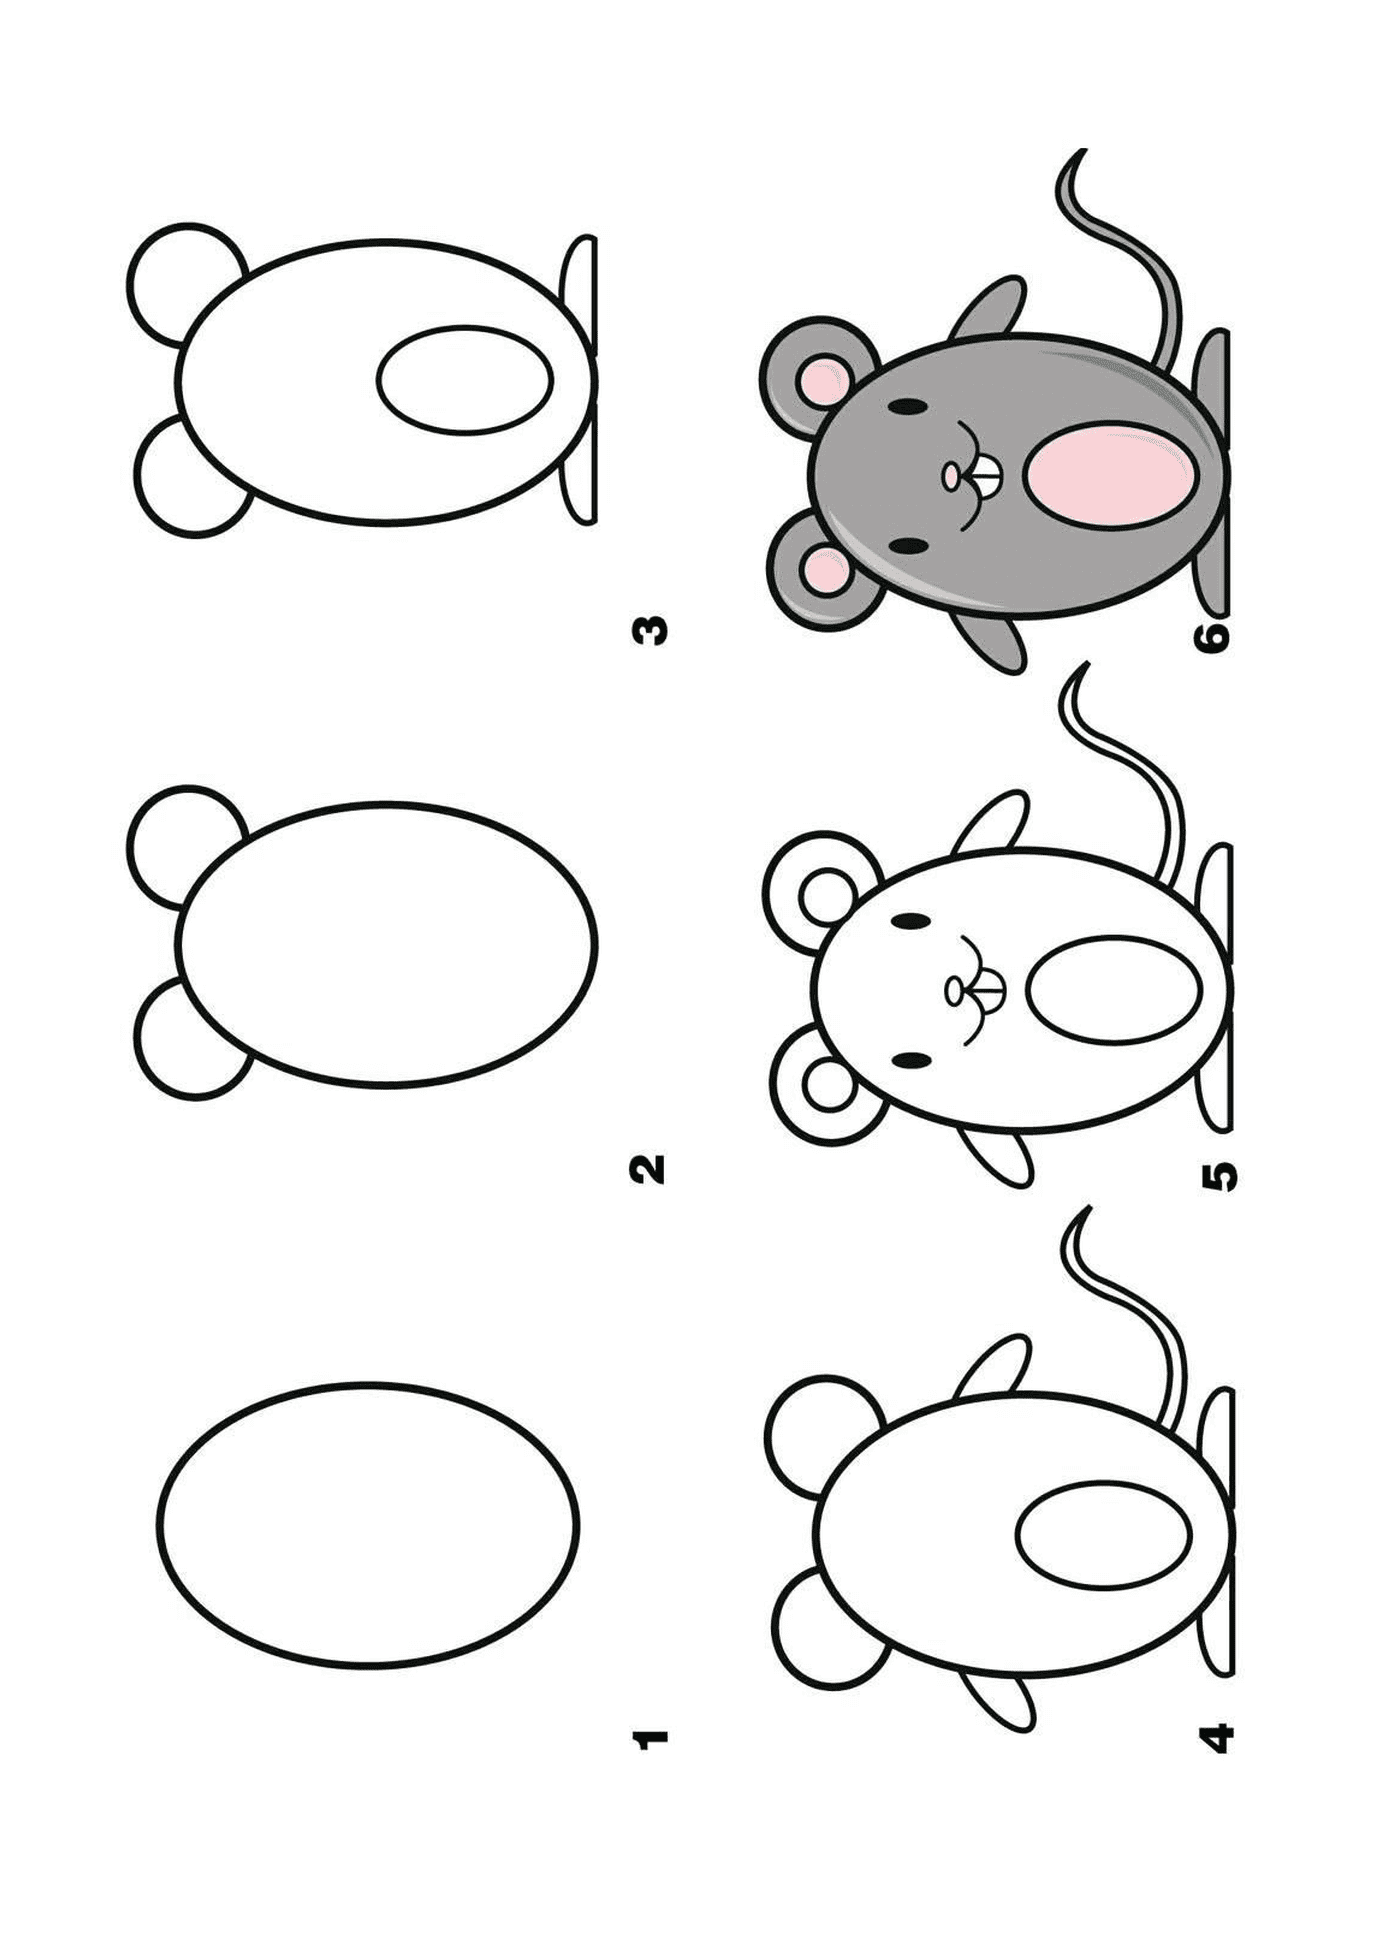  Como desenhar um mouse passo a passo 